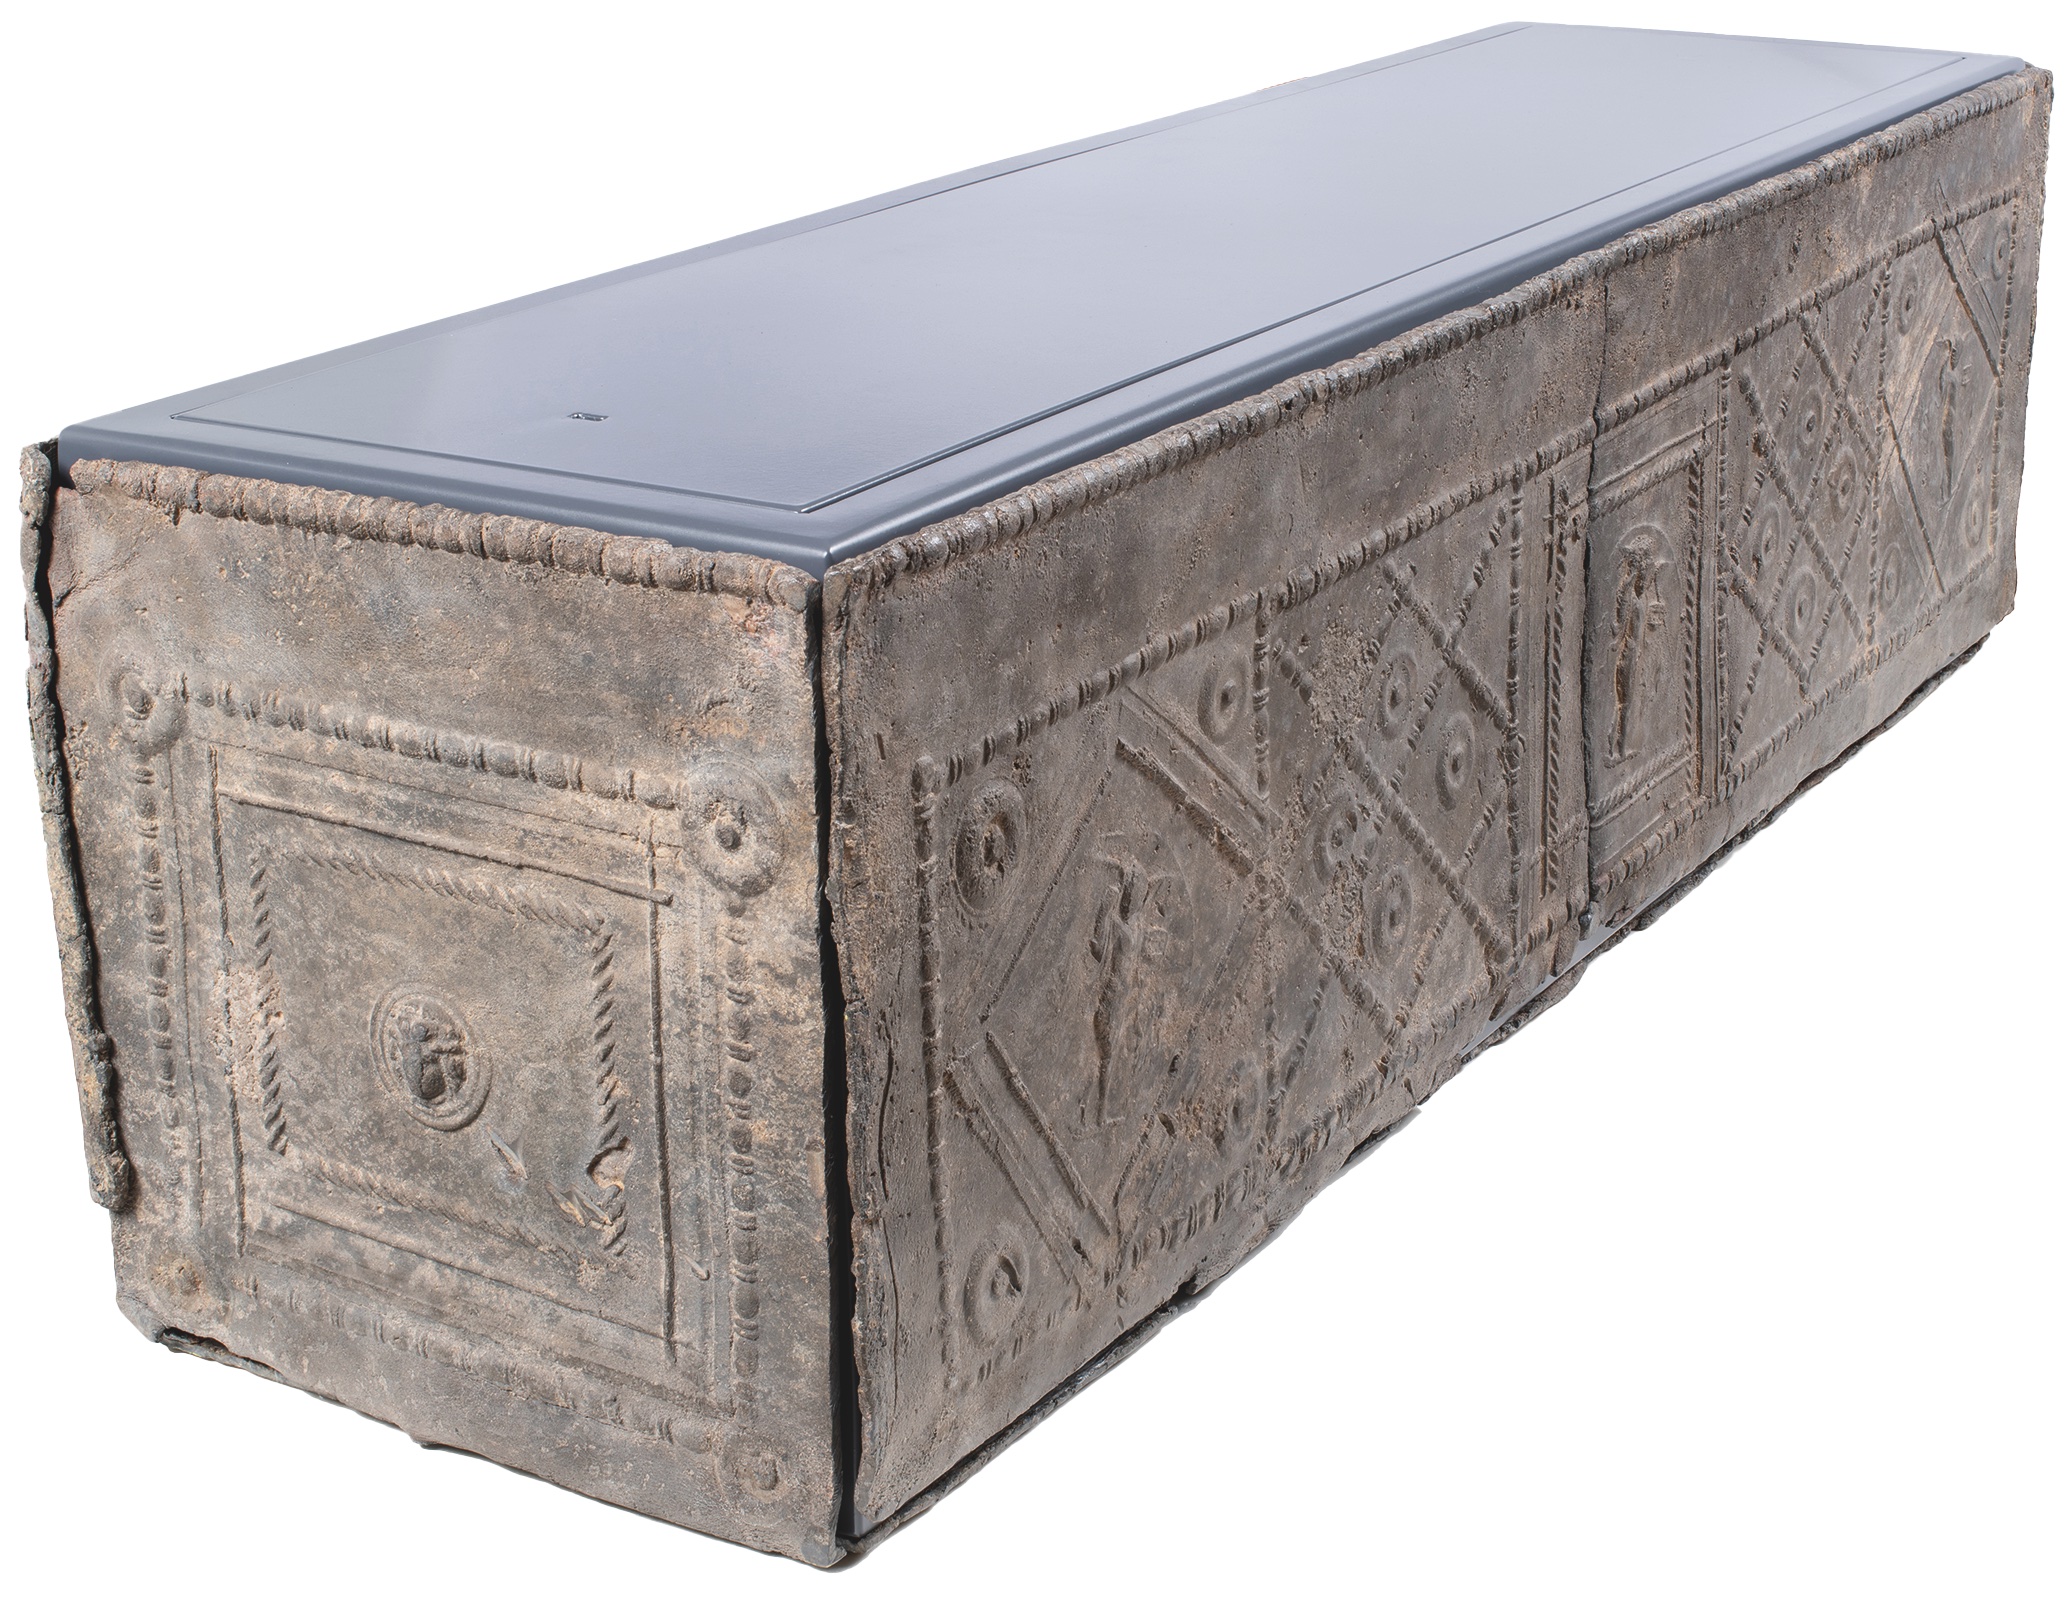 Cercueil d’enfant. Plomb, IIIe siècle ?, Rouen, musée des Antiquités. Restauré en 2022. © Laboratoire Arc’antique de Nantes